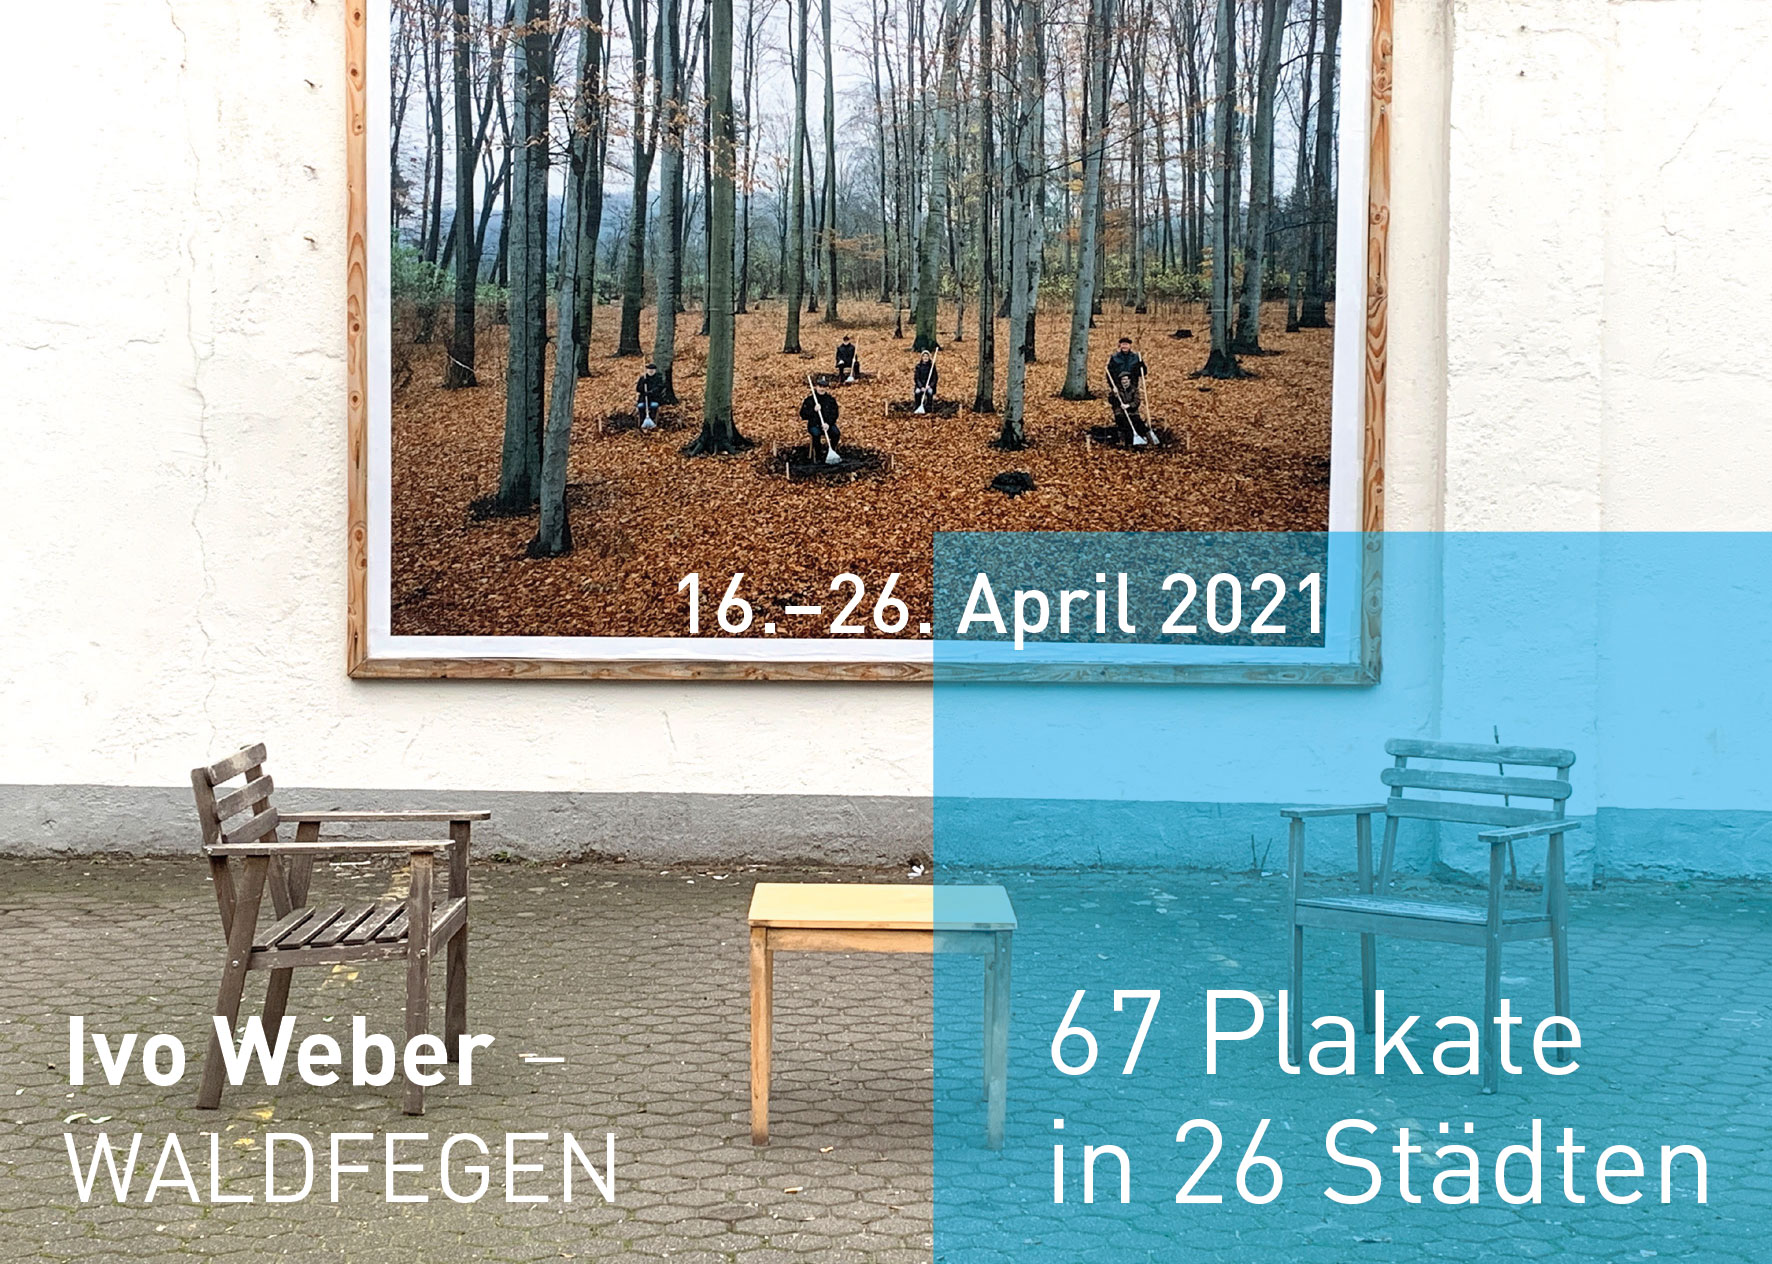 Ivo Weber Waldfegen Plakate Kunst